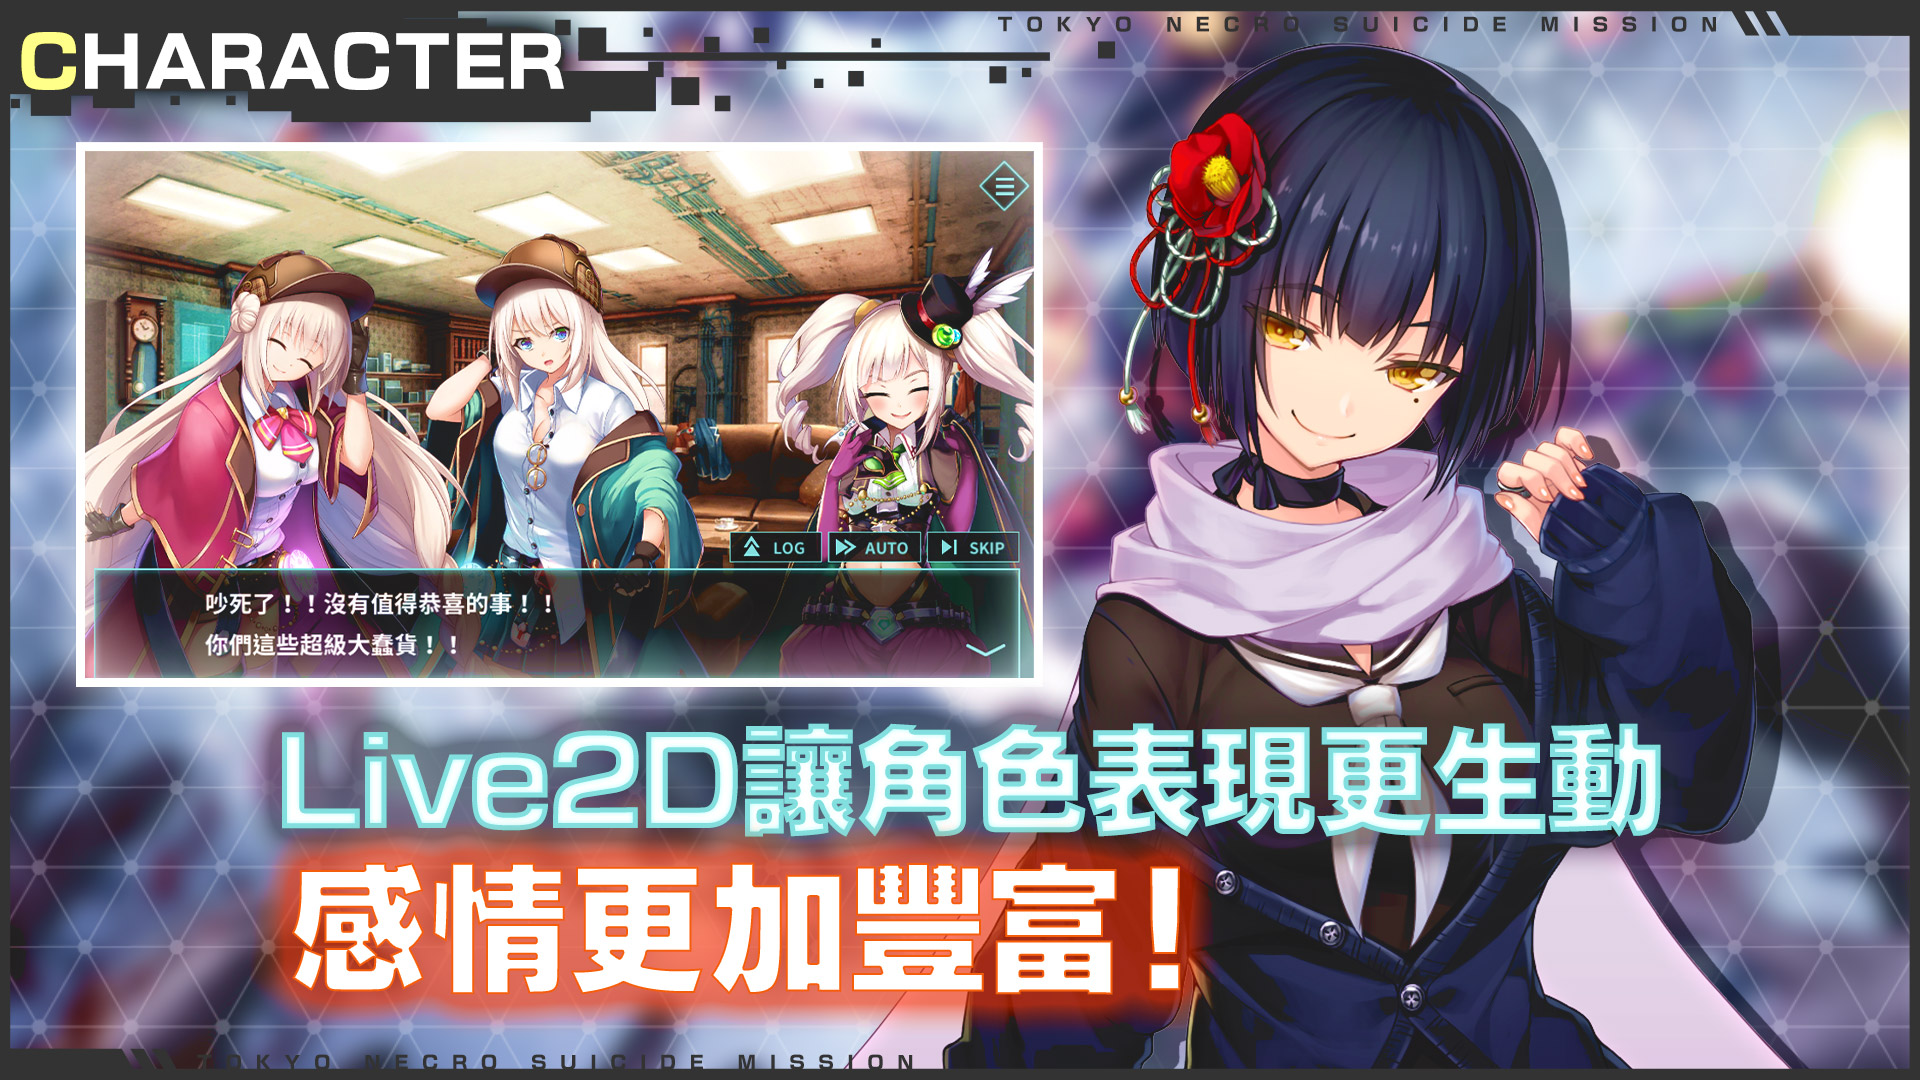 凍京NECRO 自殺任務 - Turn Based RPG - 2 - Select